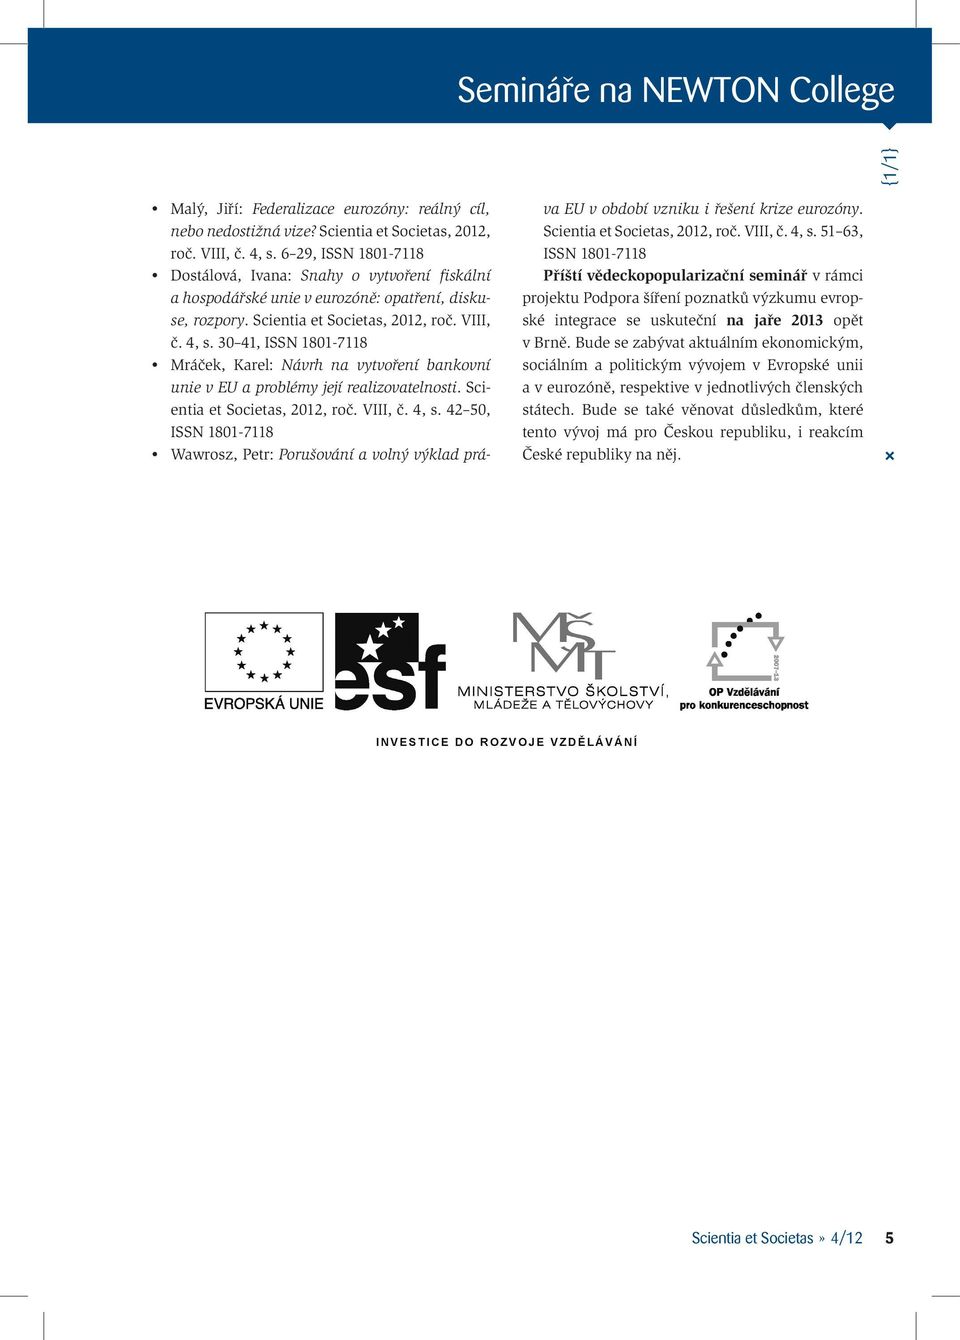 30 41, ISSN 1801-7118 Mráček, Karel: Návrh na vytvoření bankovní unie v EU a problémy její realizovatelnosti. Scientia et Societas, 2012, roč. VIII, č. 4, s.